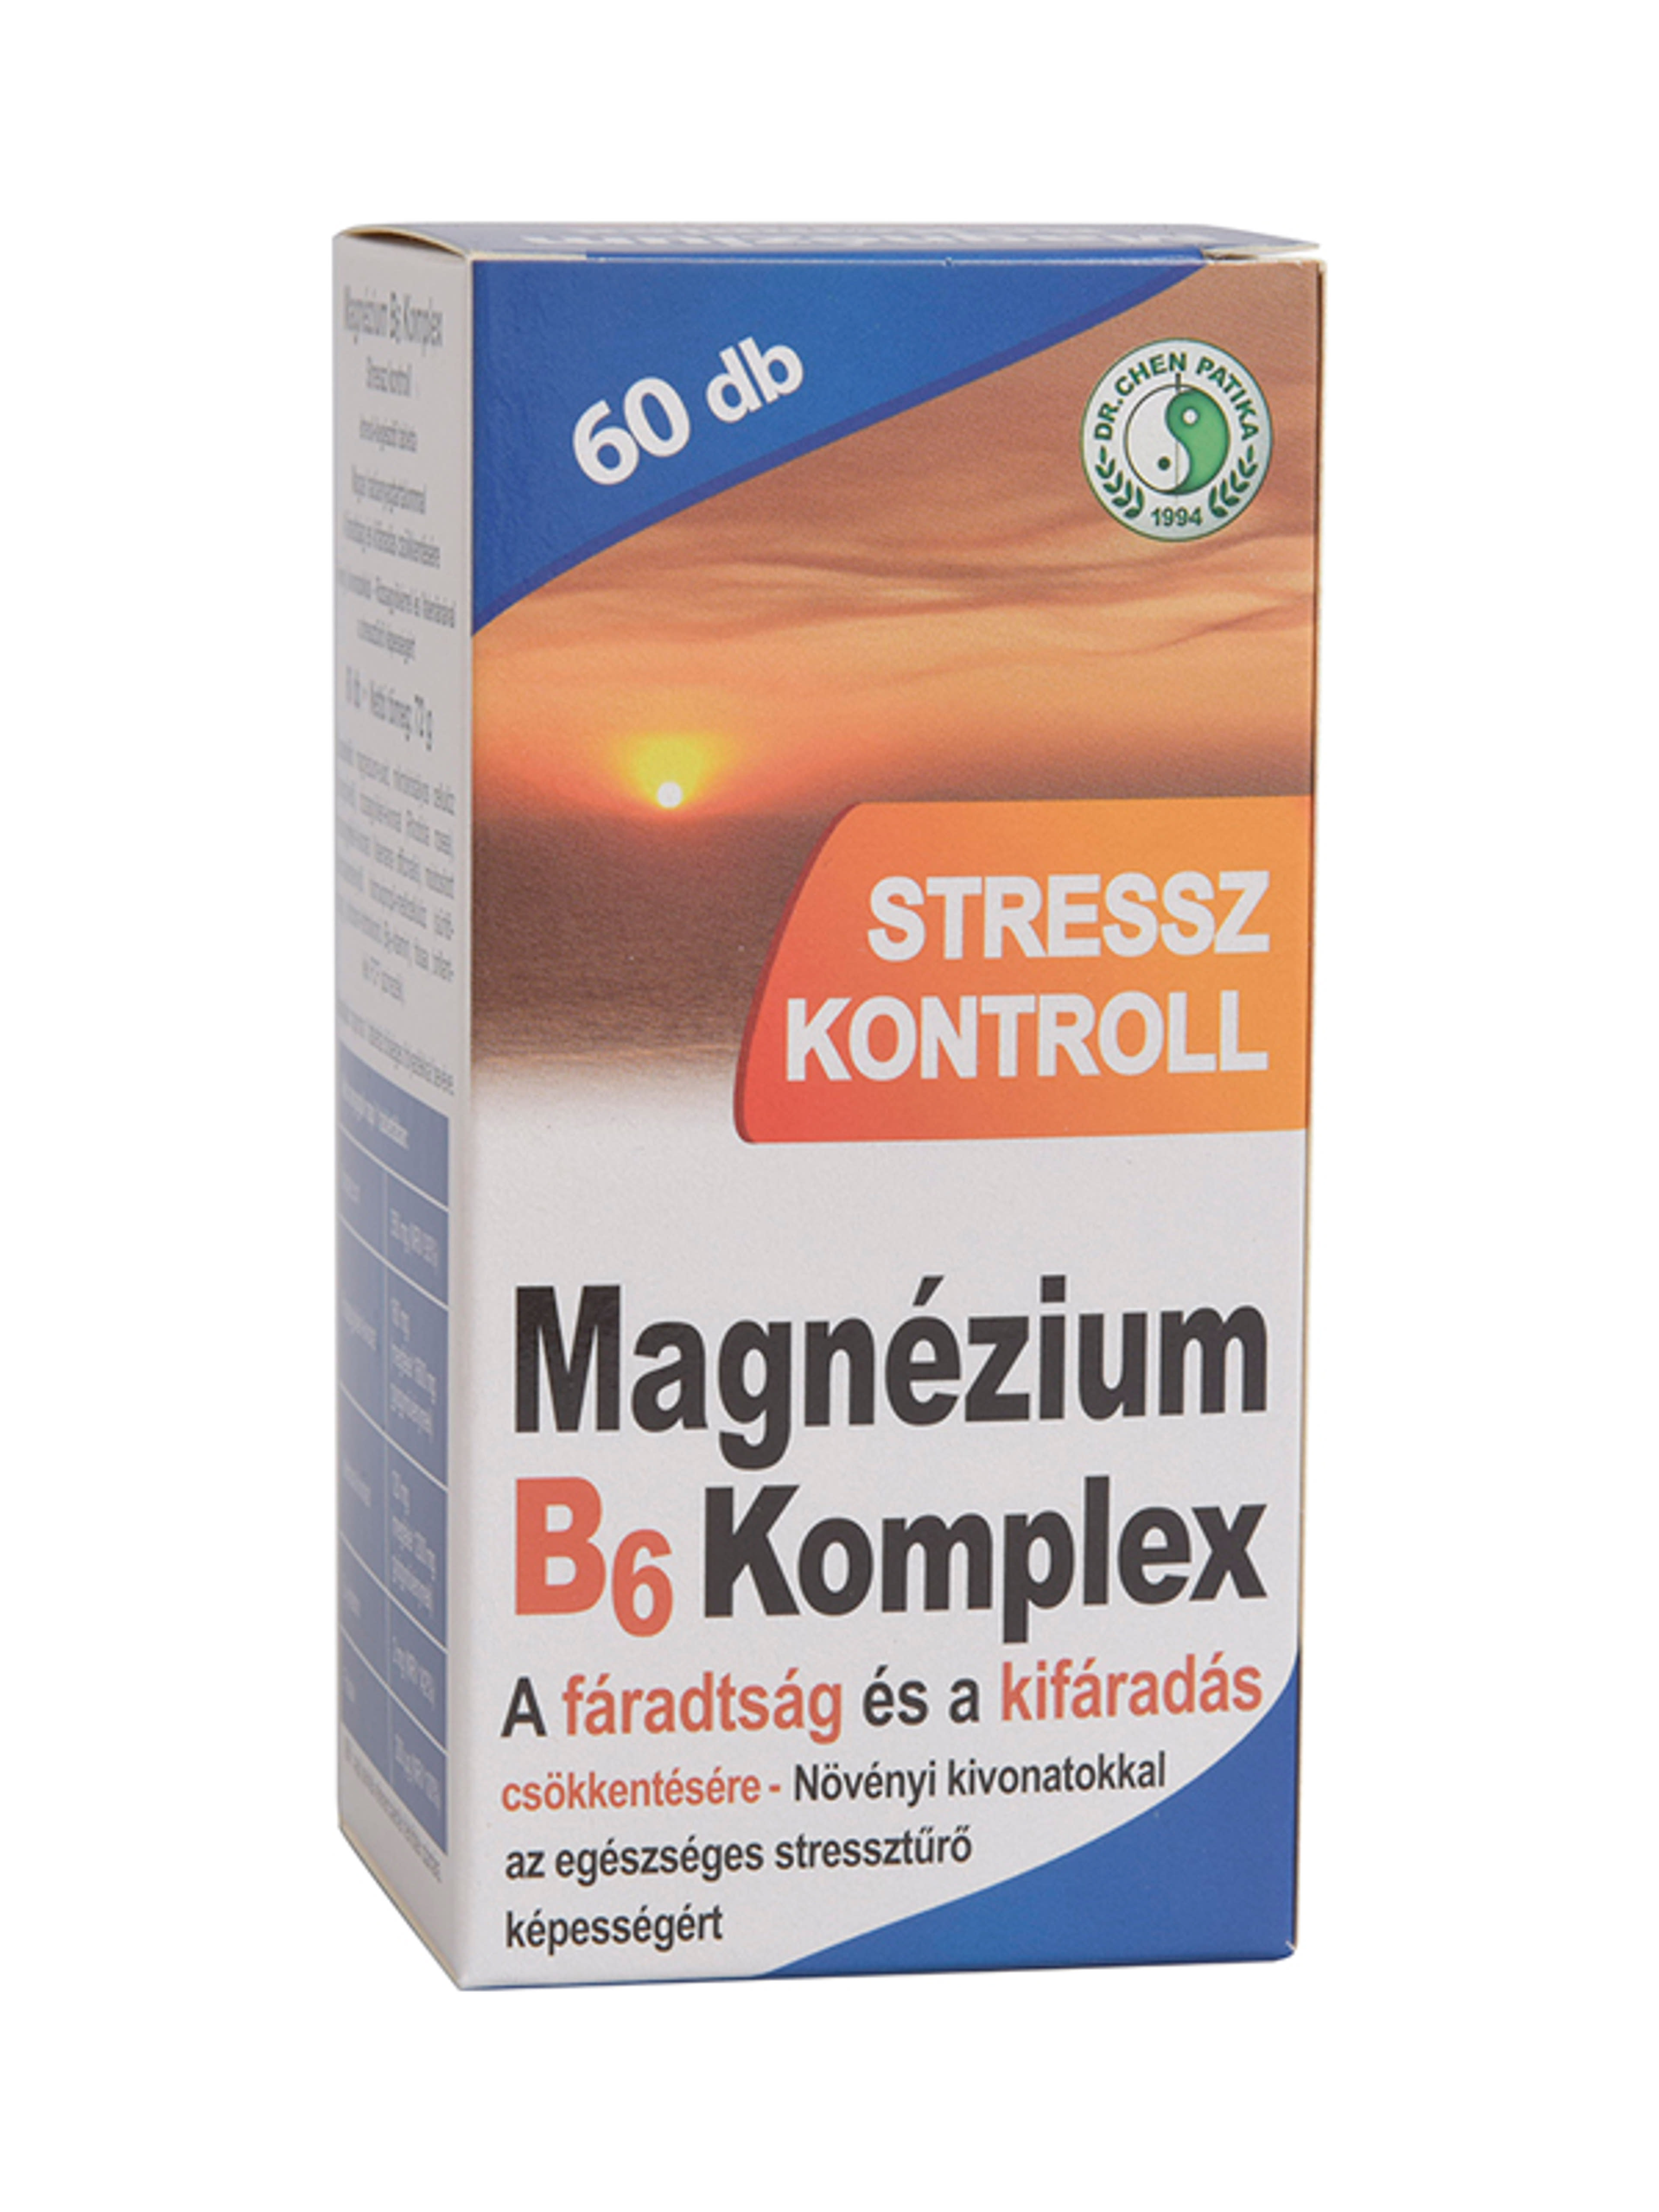 Dr.Chen Patika magnesium B6 komplex stressz tabletta - 60 db